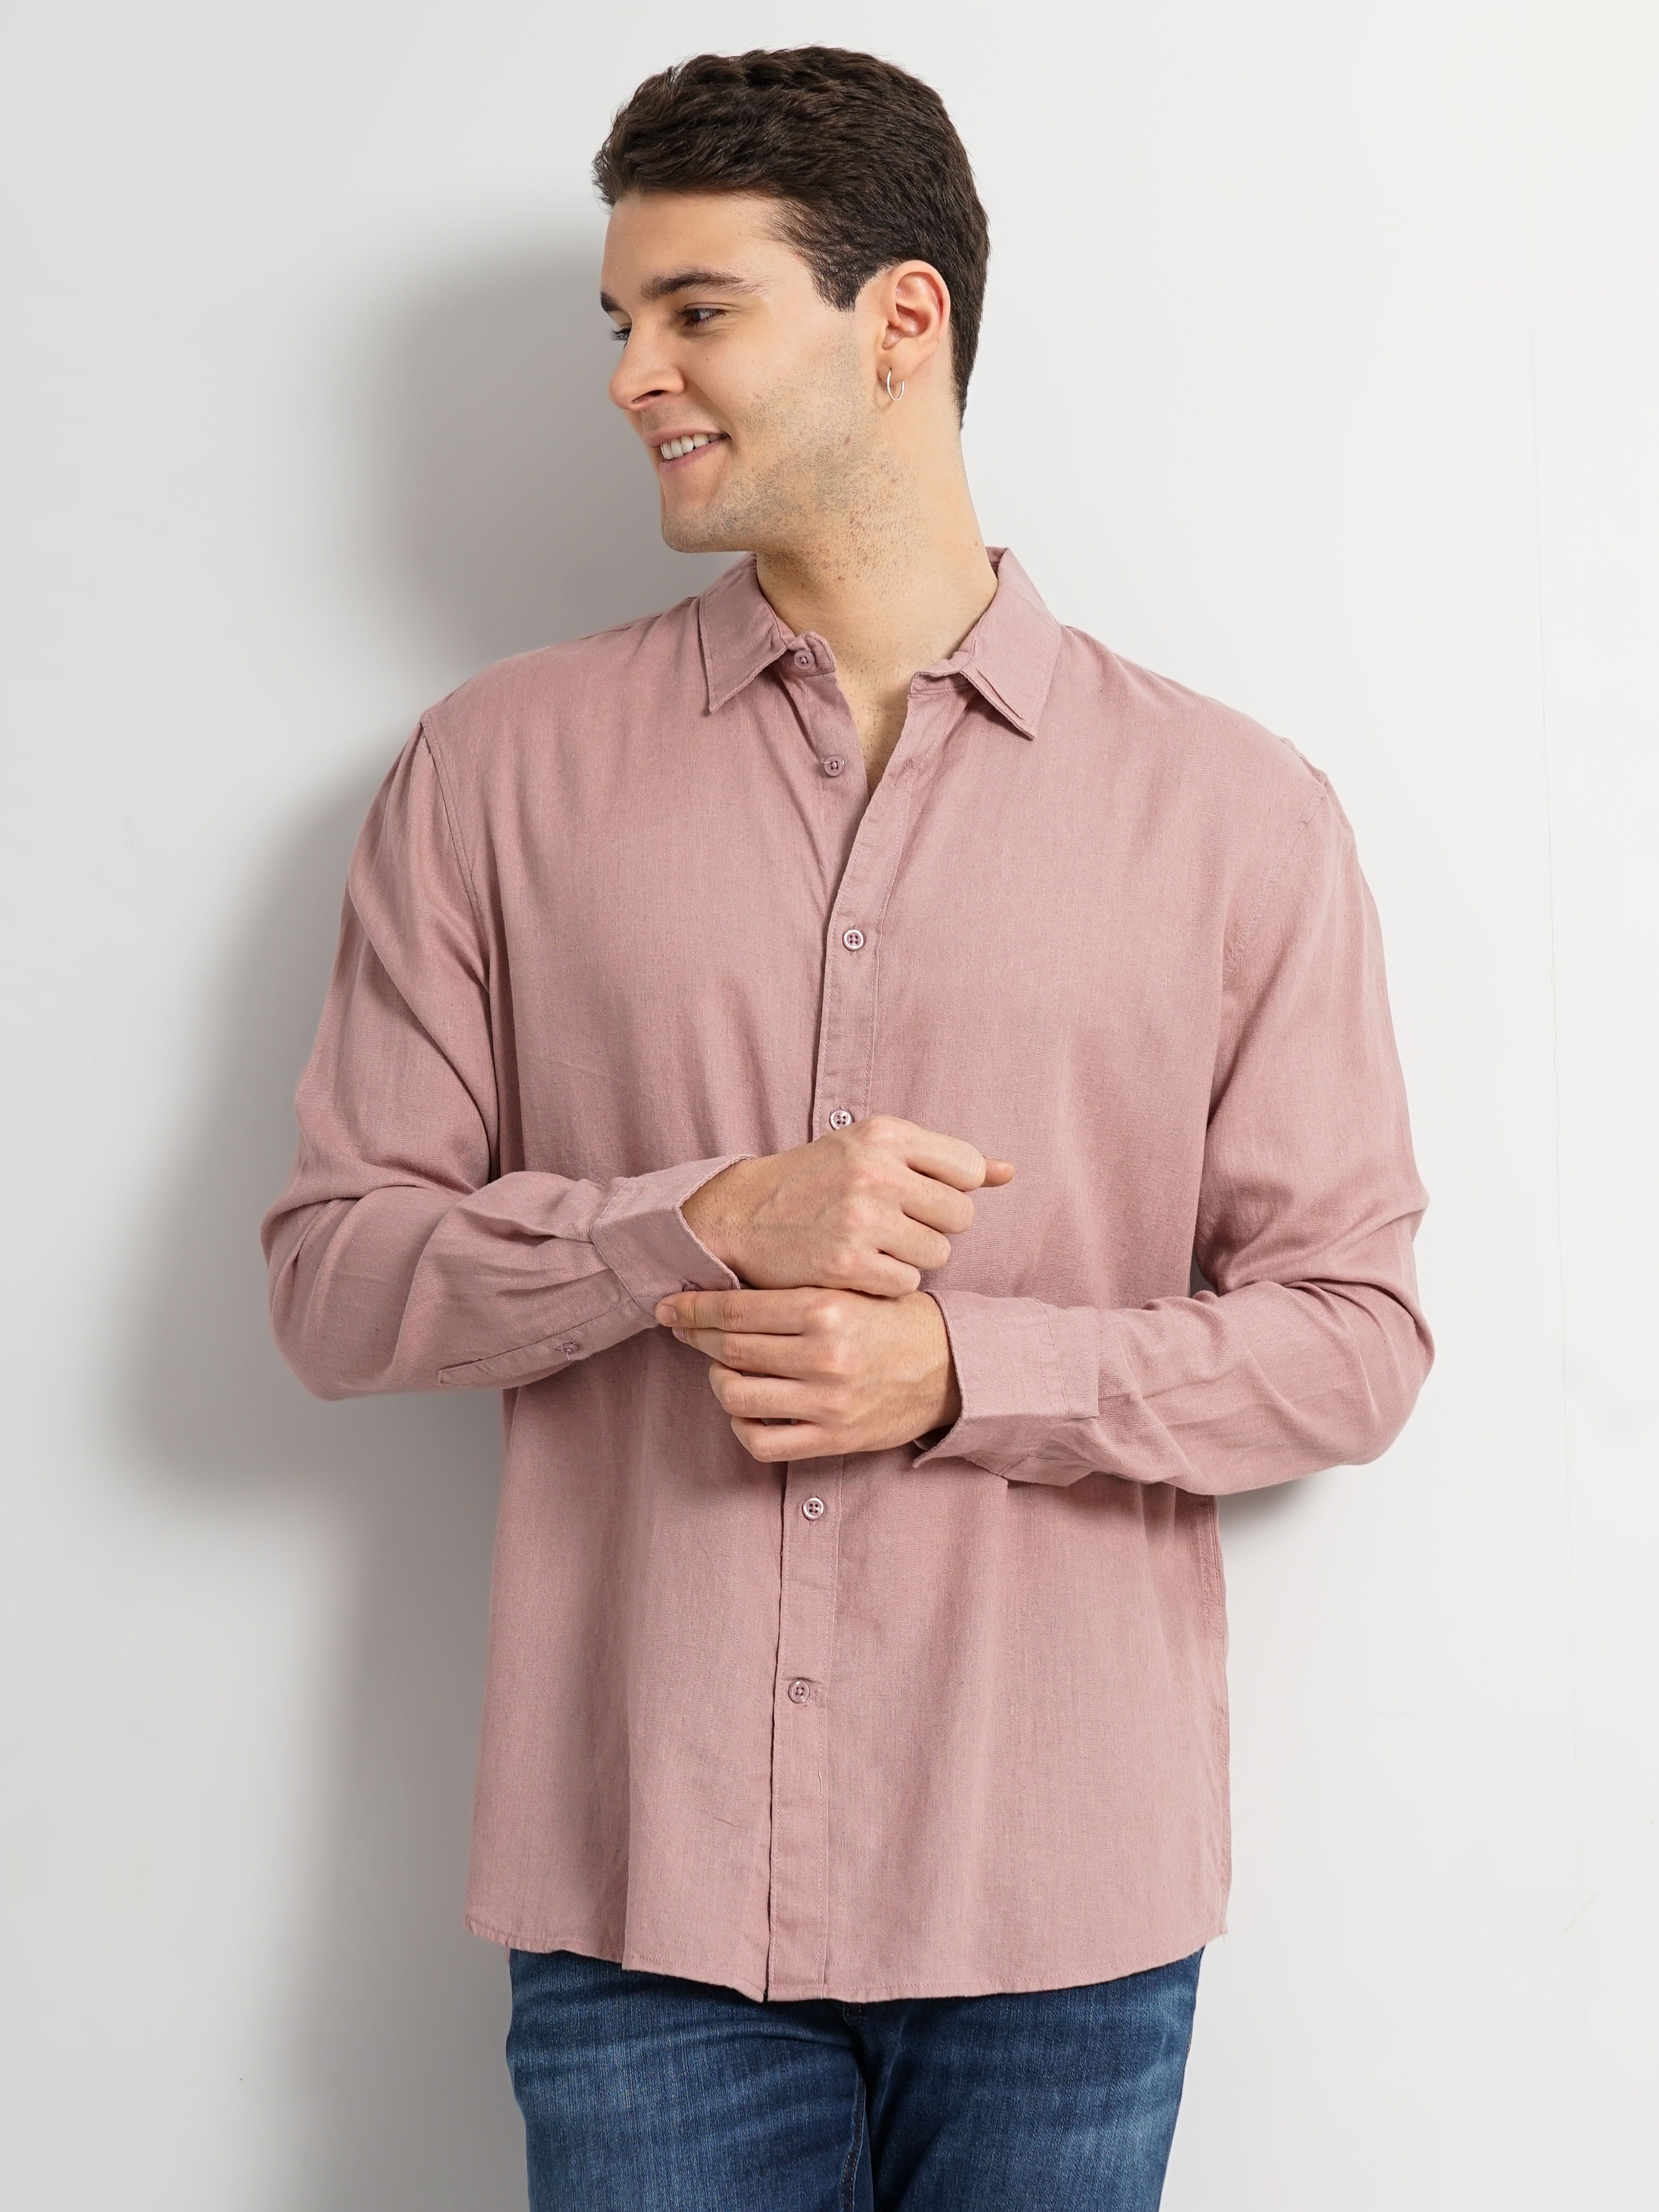 Celio Men's Solid Linen Shirt